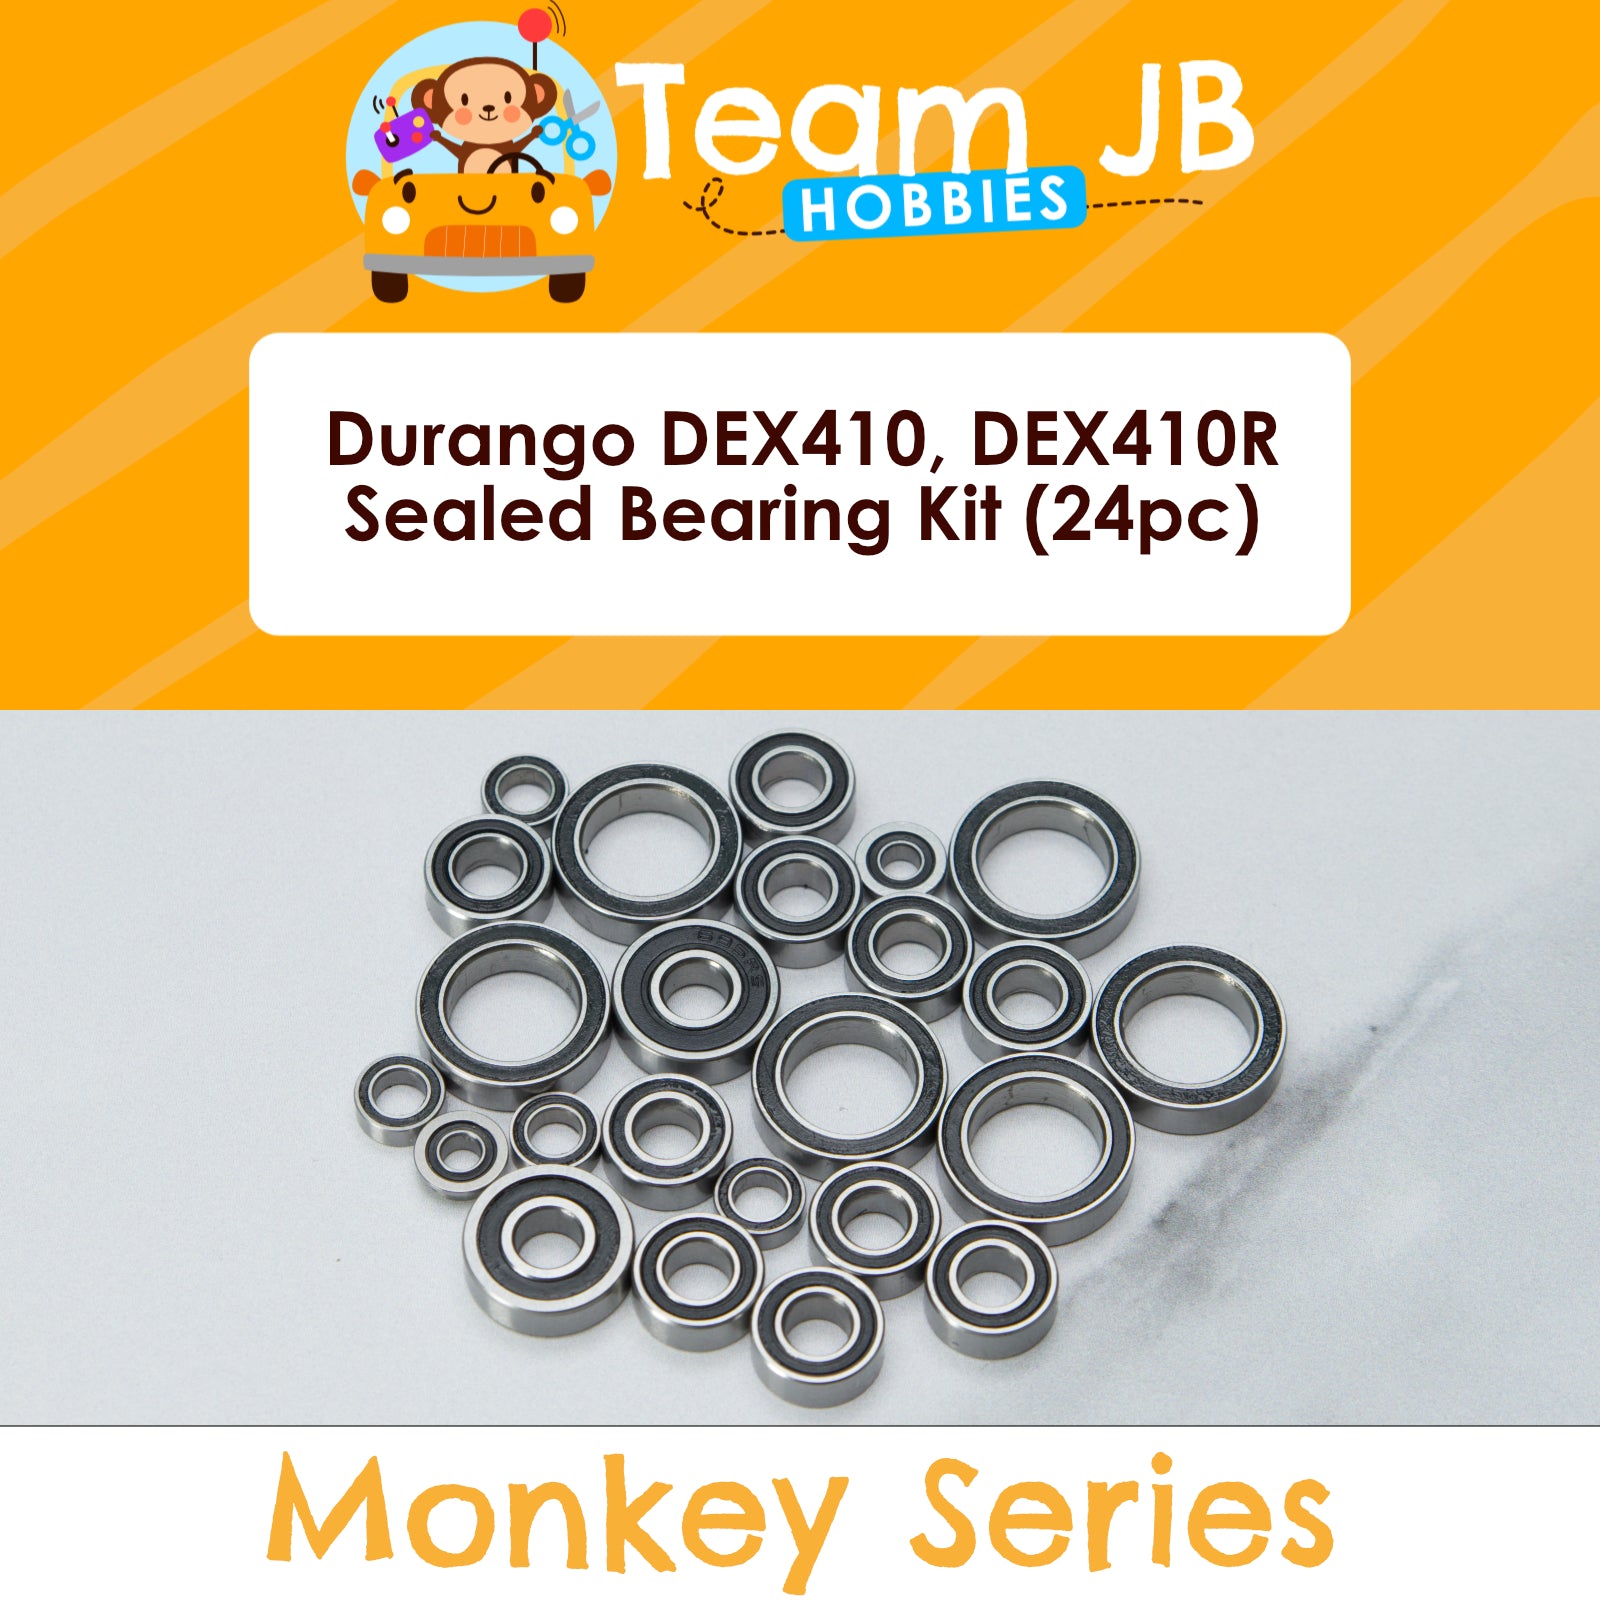 Durango DEX410, DEX410R - Sealed Bearing Kit